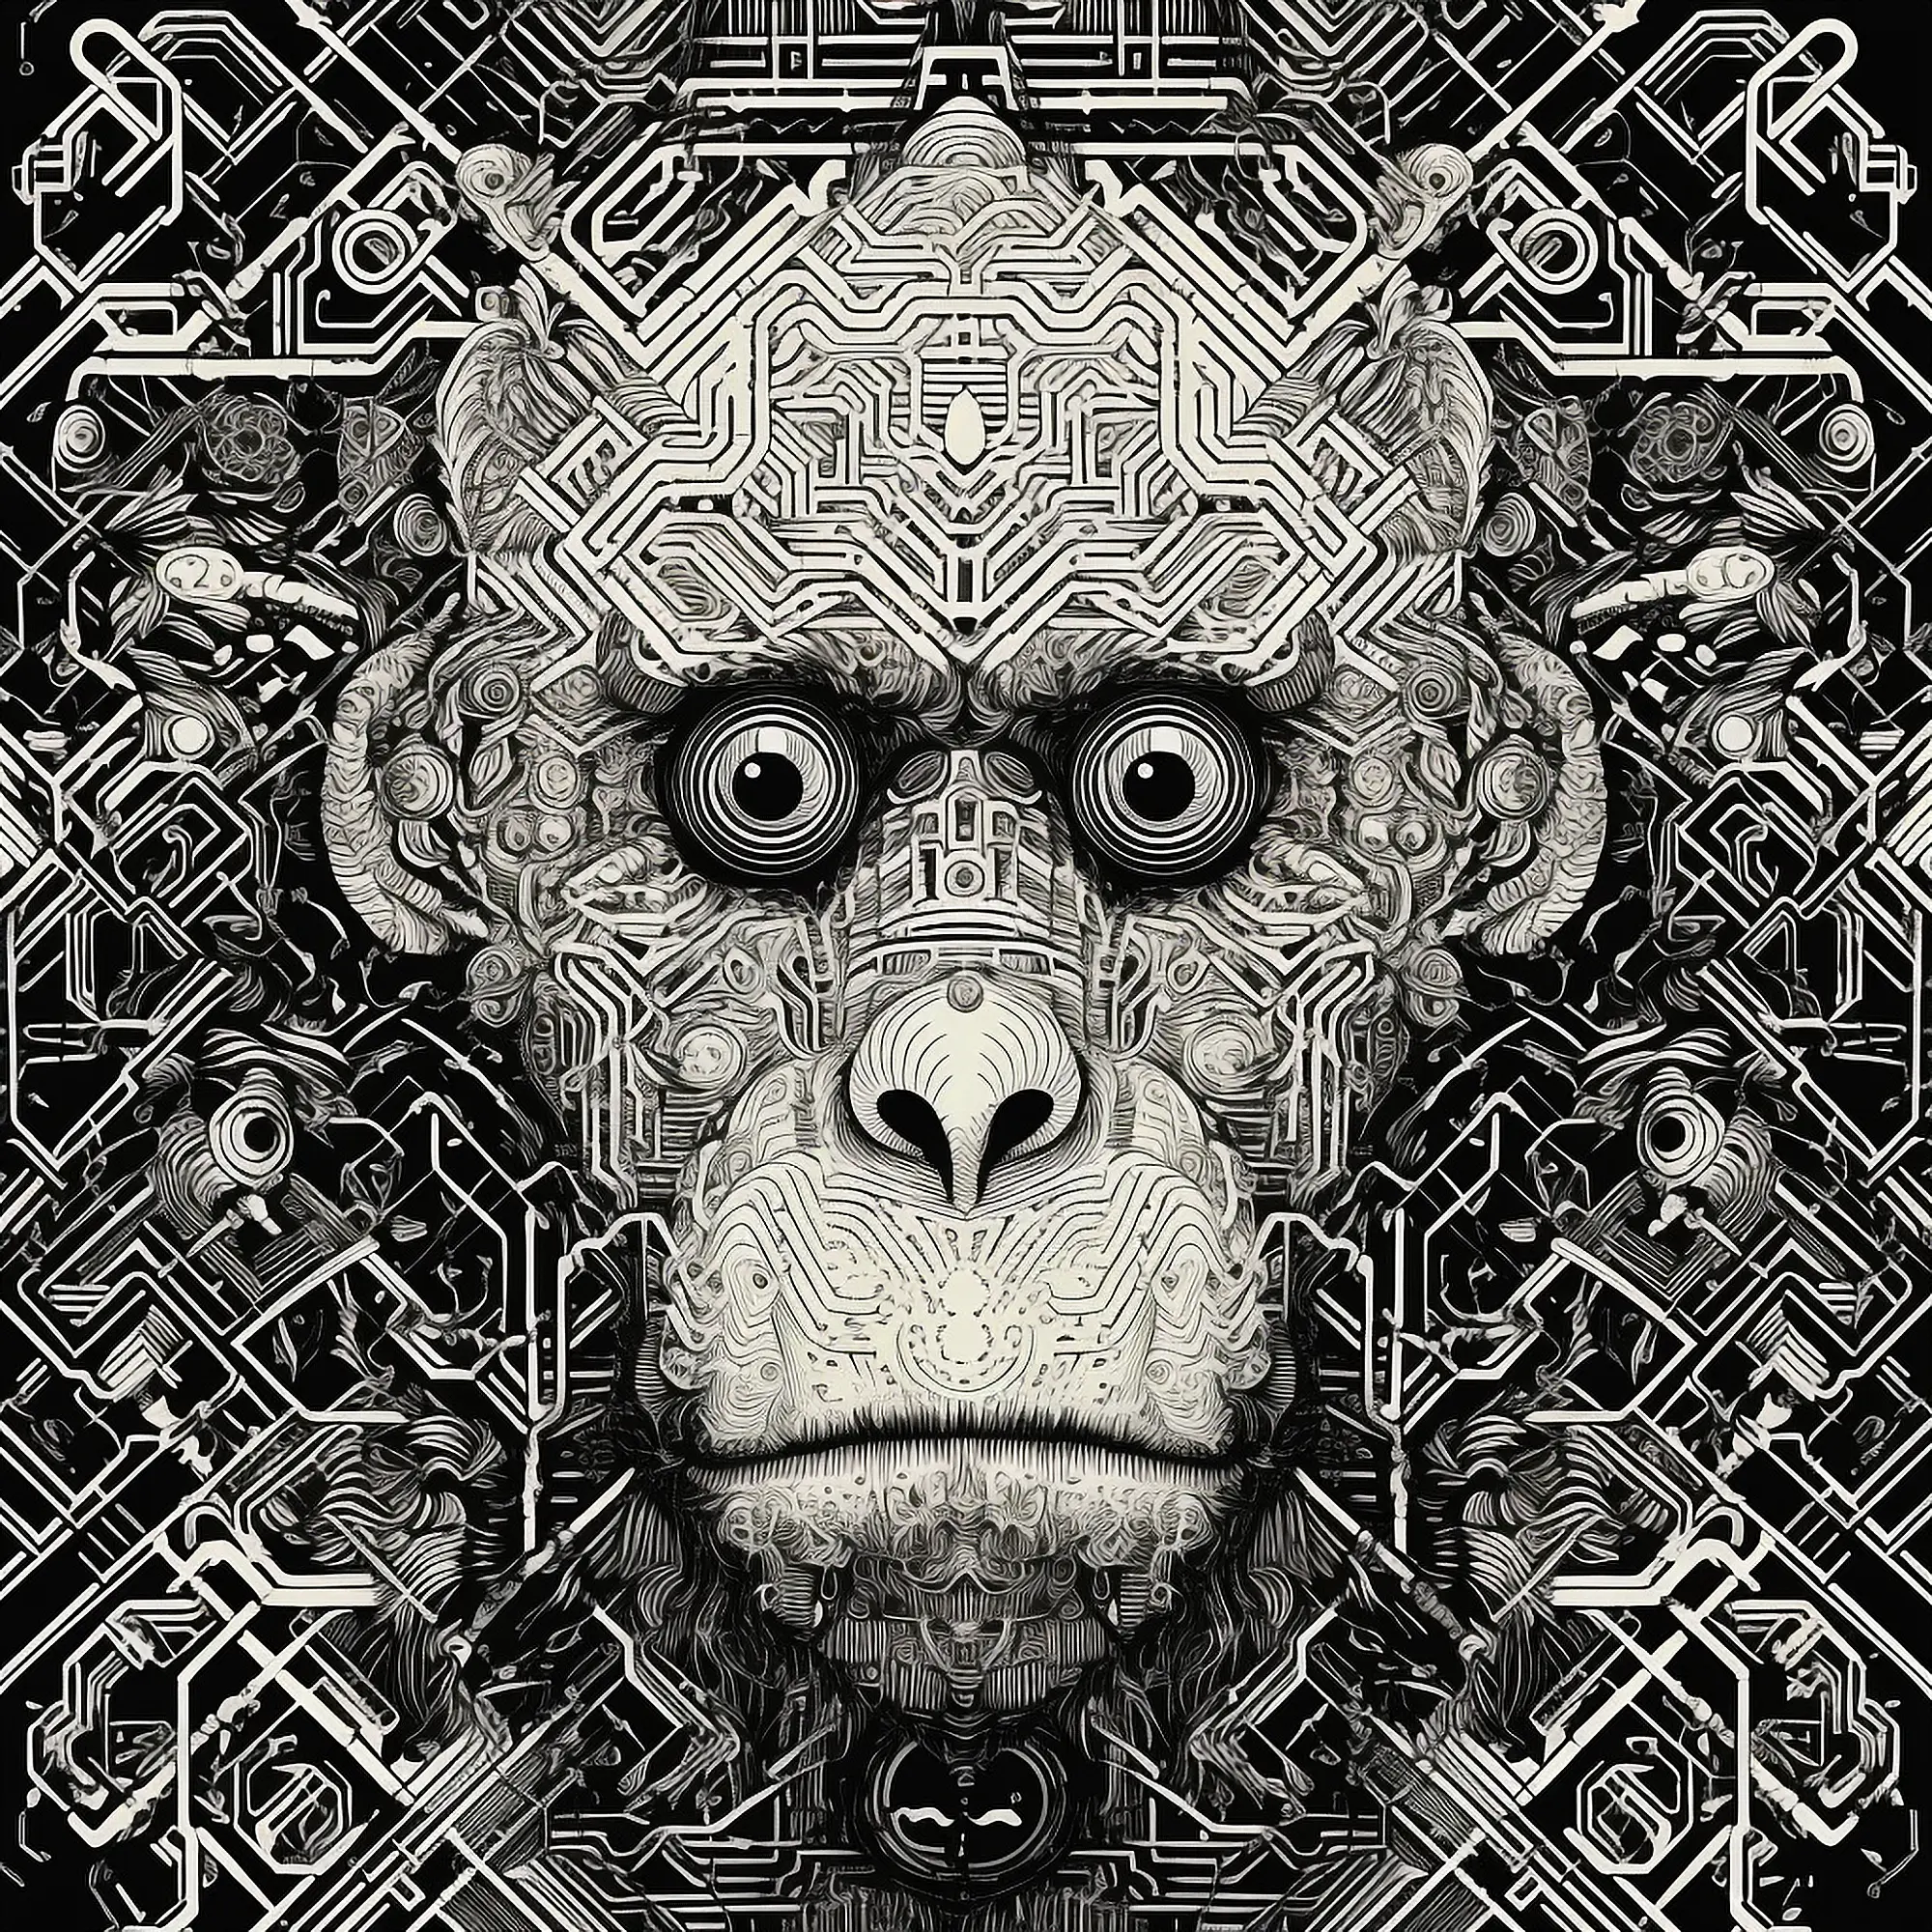 Monkey1, 2023